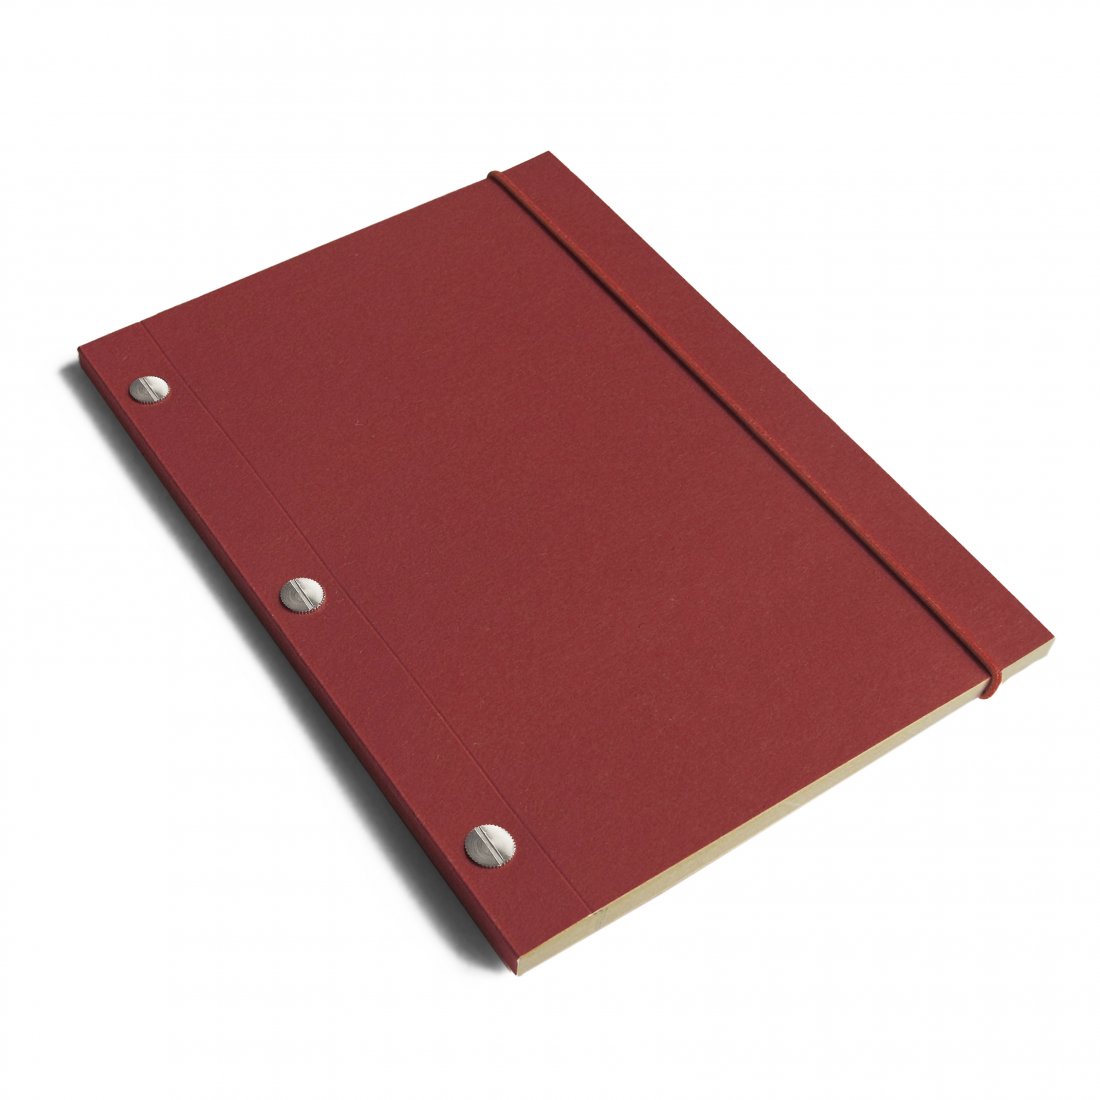 A5 Kraft Notebook - Red